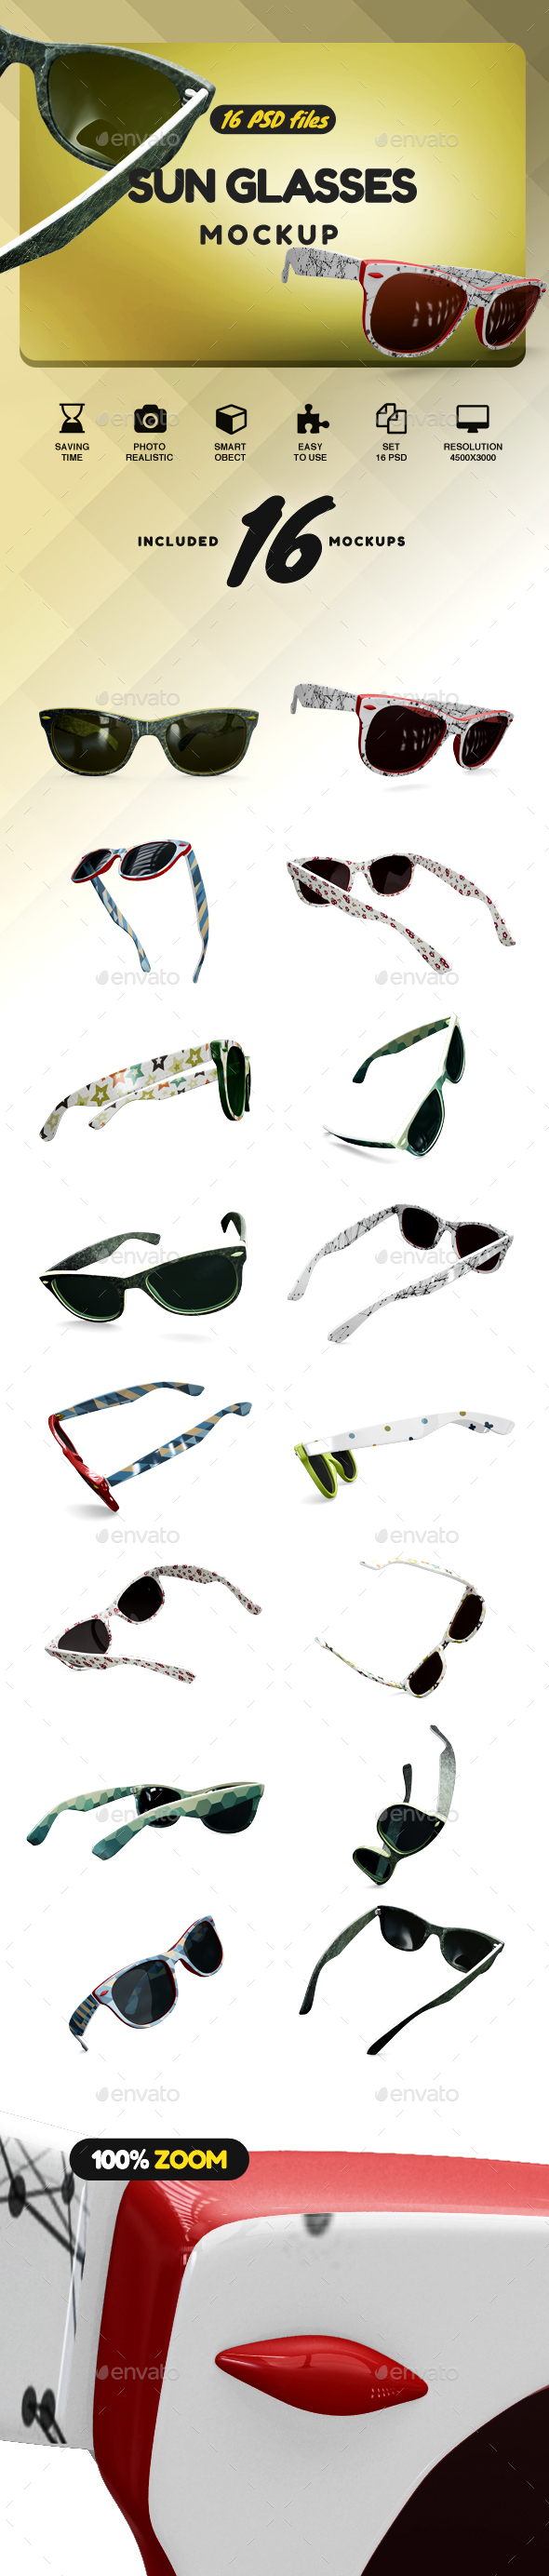 GraphicRiver Sun Glasses Mockup 21158216